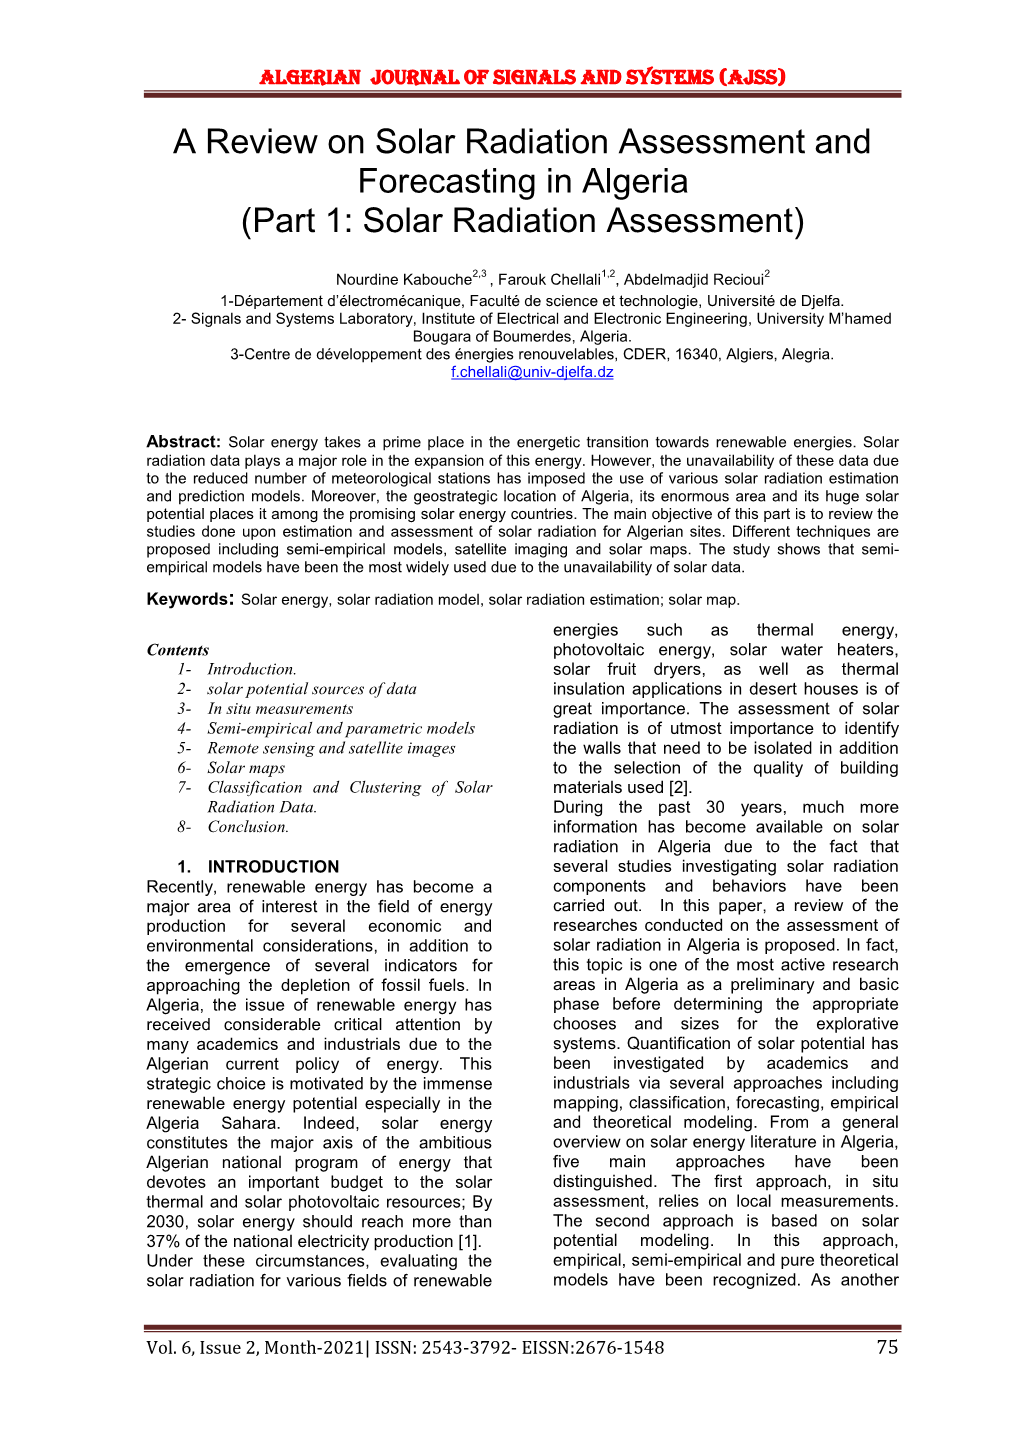 Part 1: Solar Radiation Assessment)